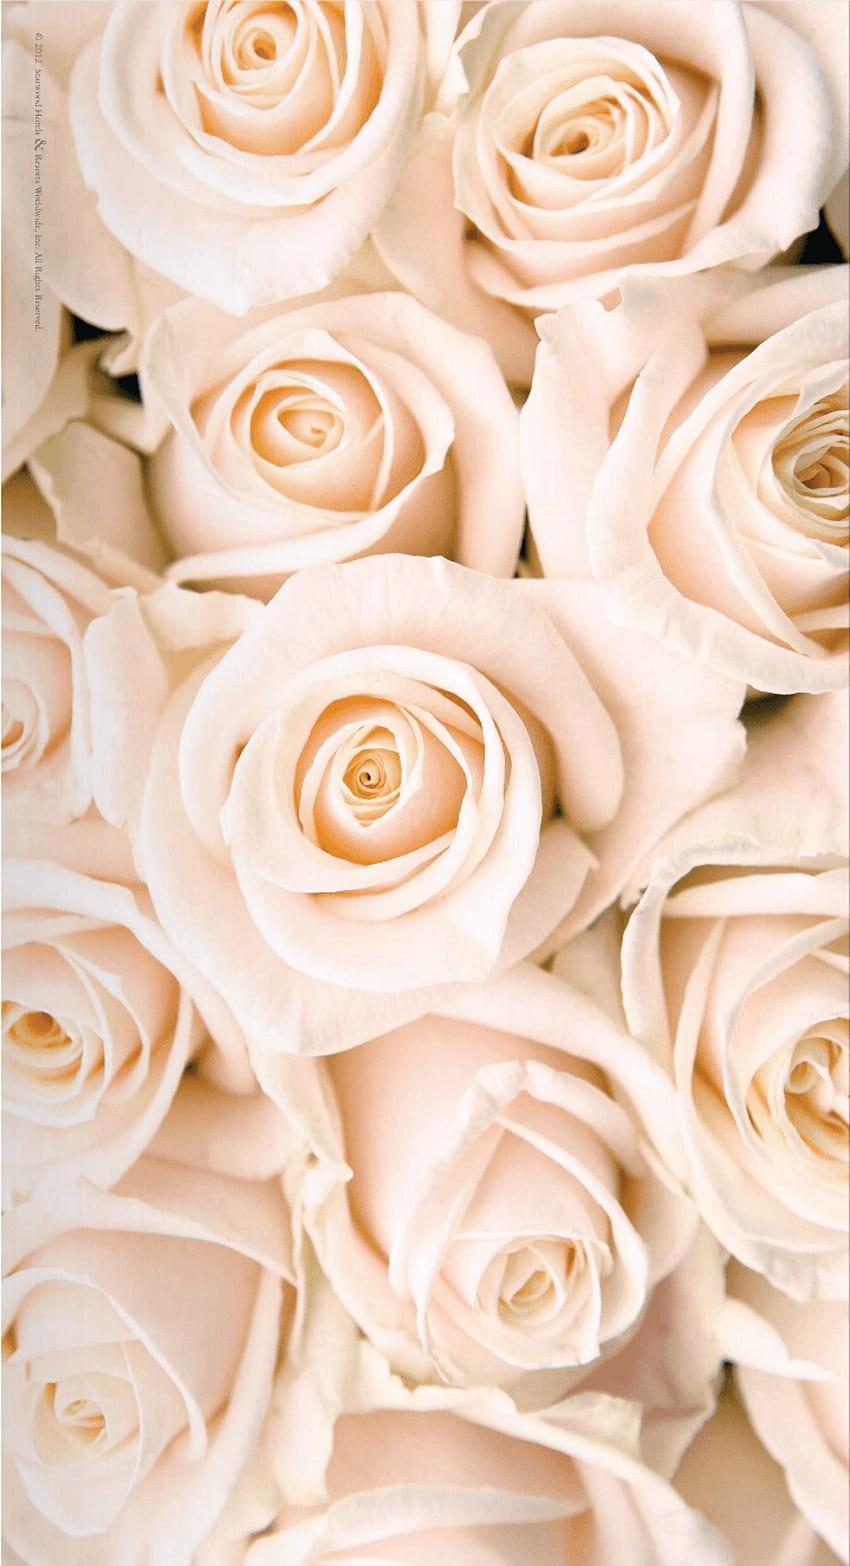 Hoa hồng màu hồng nhạt và trắng, màu vàng hồng: Hoa hồng luôn là biểu tượng của tình yêu, sự đẹp đẽ và sự phong cao. Bạn có thích những bông hoa hồng màu hồng nhạt và trắng, hay màu vàng hồng thì đừng bỏ qua những hình ảnh tuyệt vời trên trang web của chúng tôi. Mỗi bức hình đều mang một sắc thái riêng biệt và đẹp đến không ngờ. Cùng hòa mình vào thế giới tuyệt vời của những bông hoa hồng tuyệt đẹp nhé!